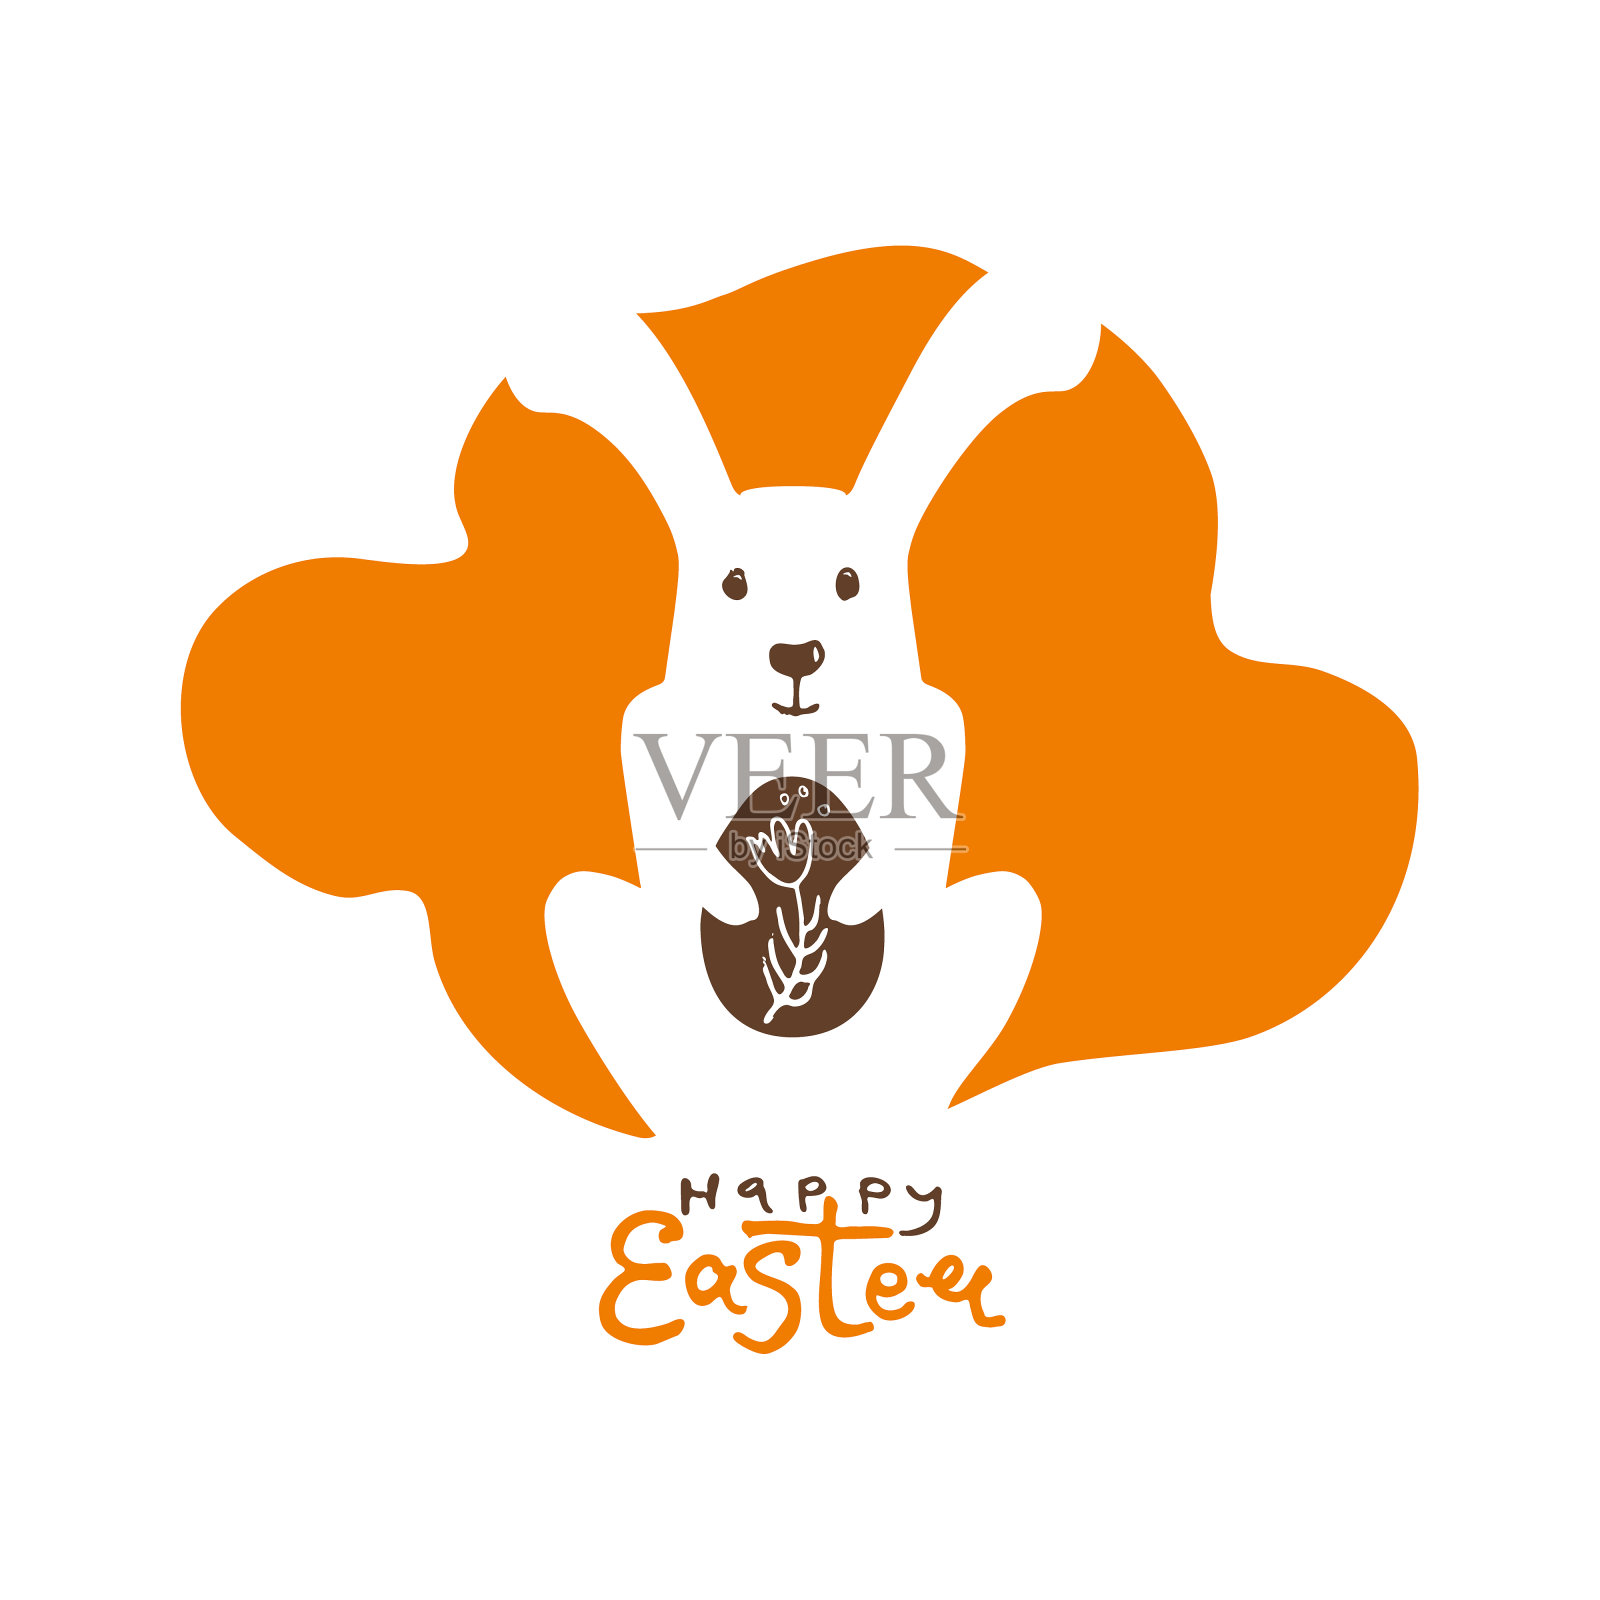 复活节快乐。可爱的贴纸与剪影的复活节兔子在一个橙色斑点的背景。兔子拿着一个纪念复活节彩蛋。插画图片素材